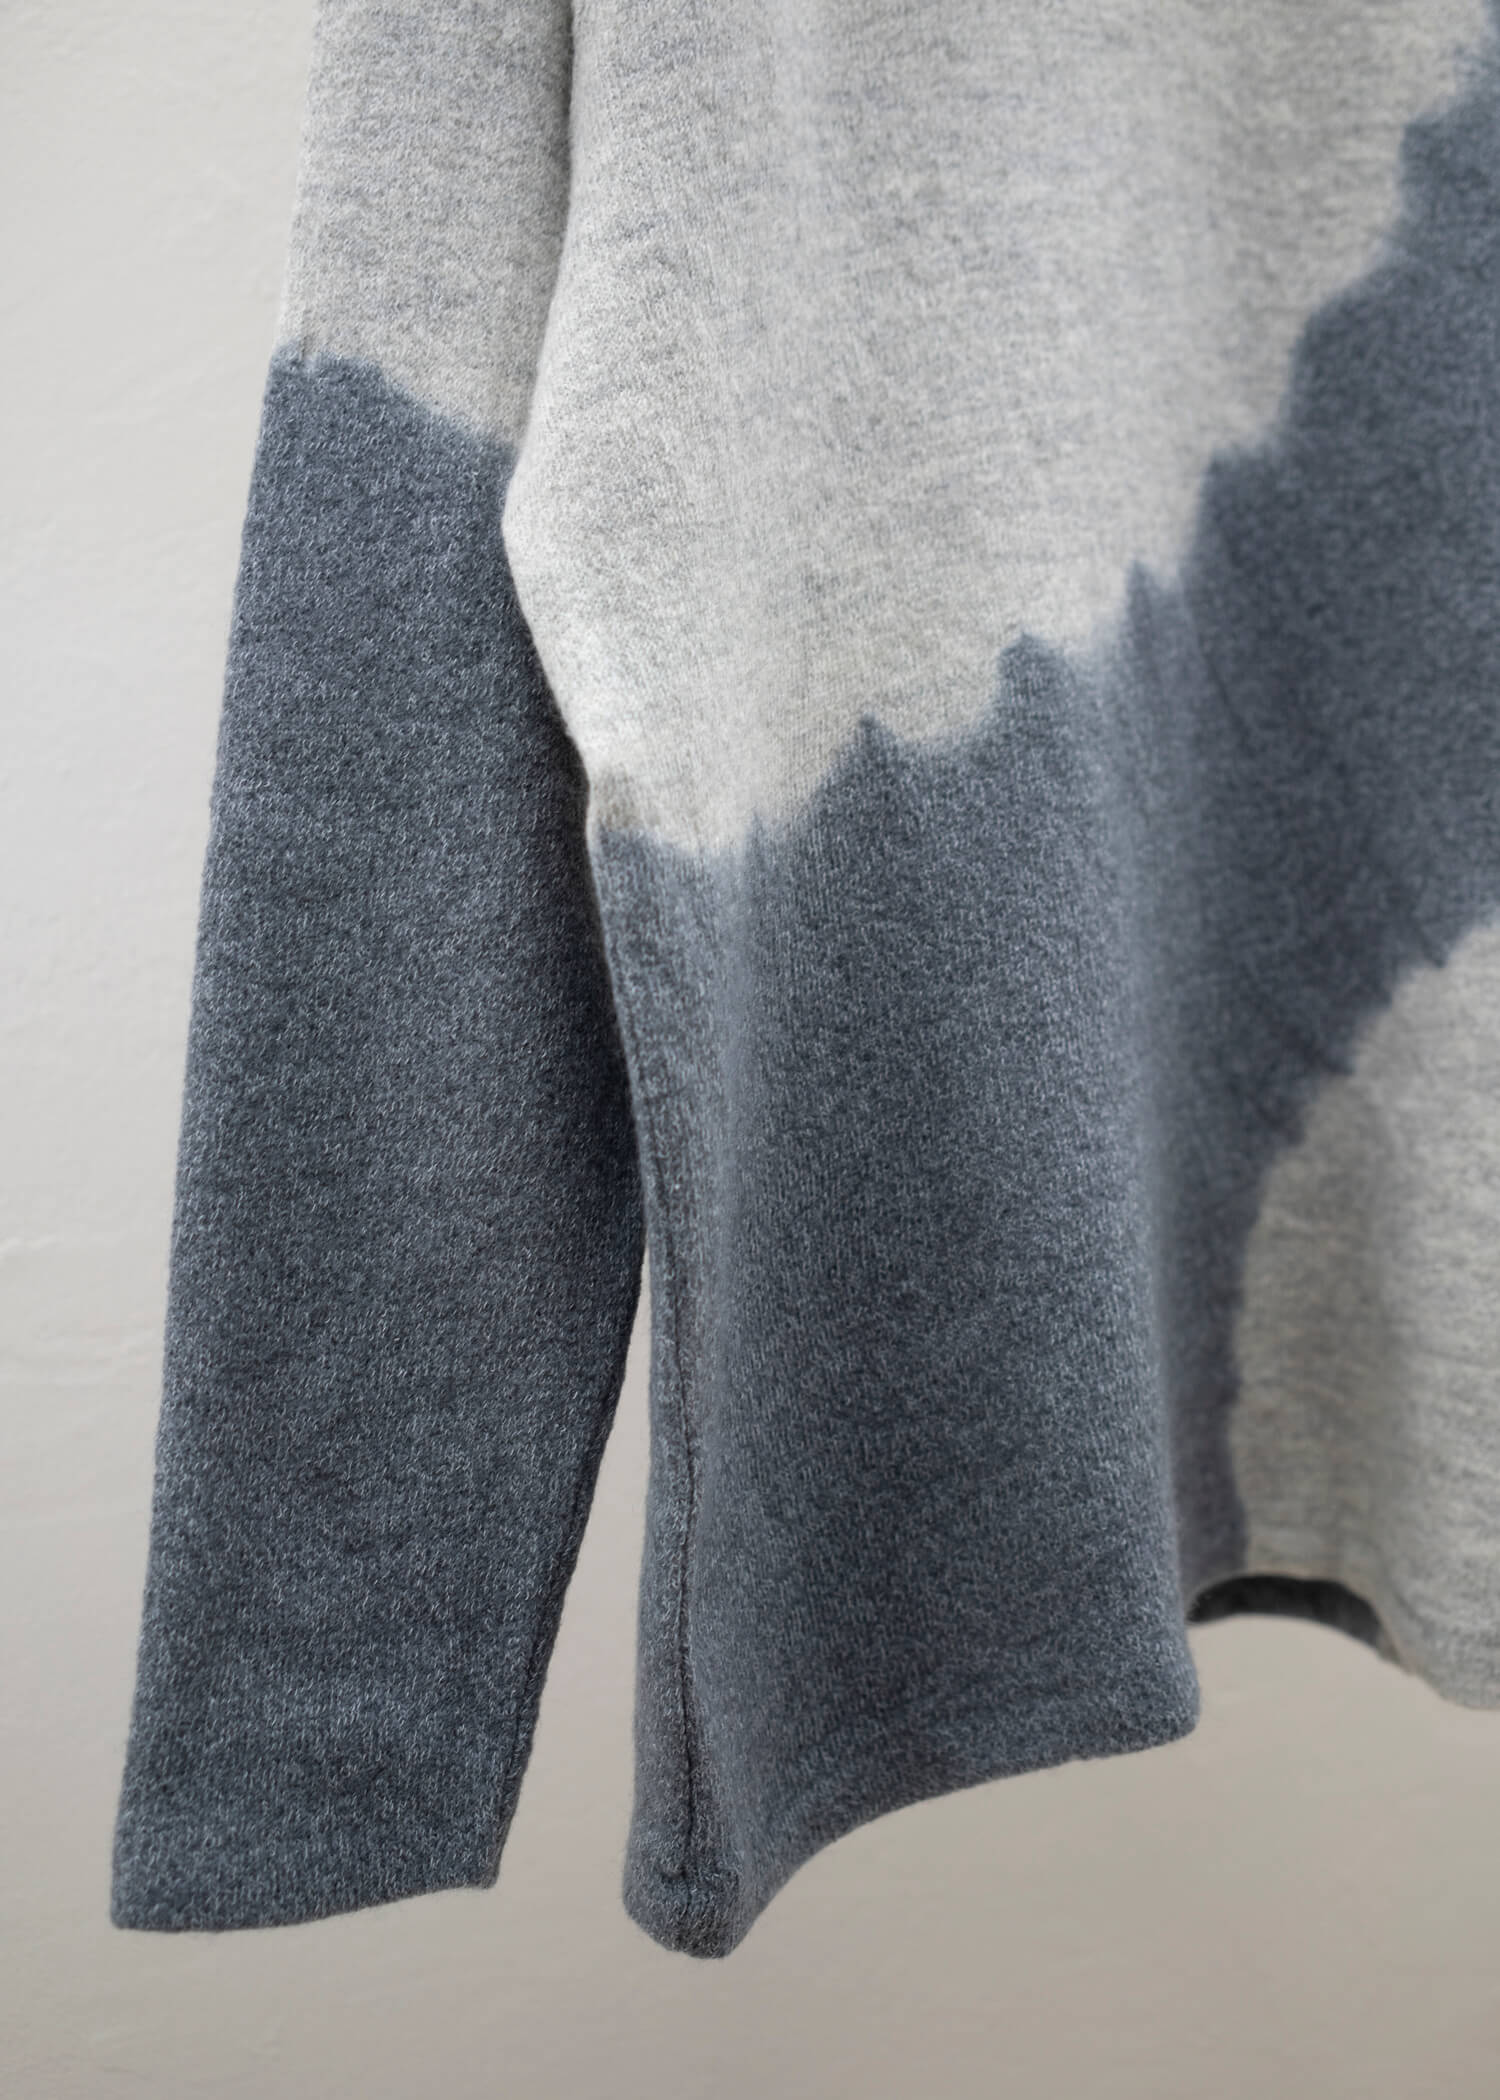 SUZUSAN Wool Cotton Jersey Crew Neck Pullover Grey - Light Grey